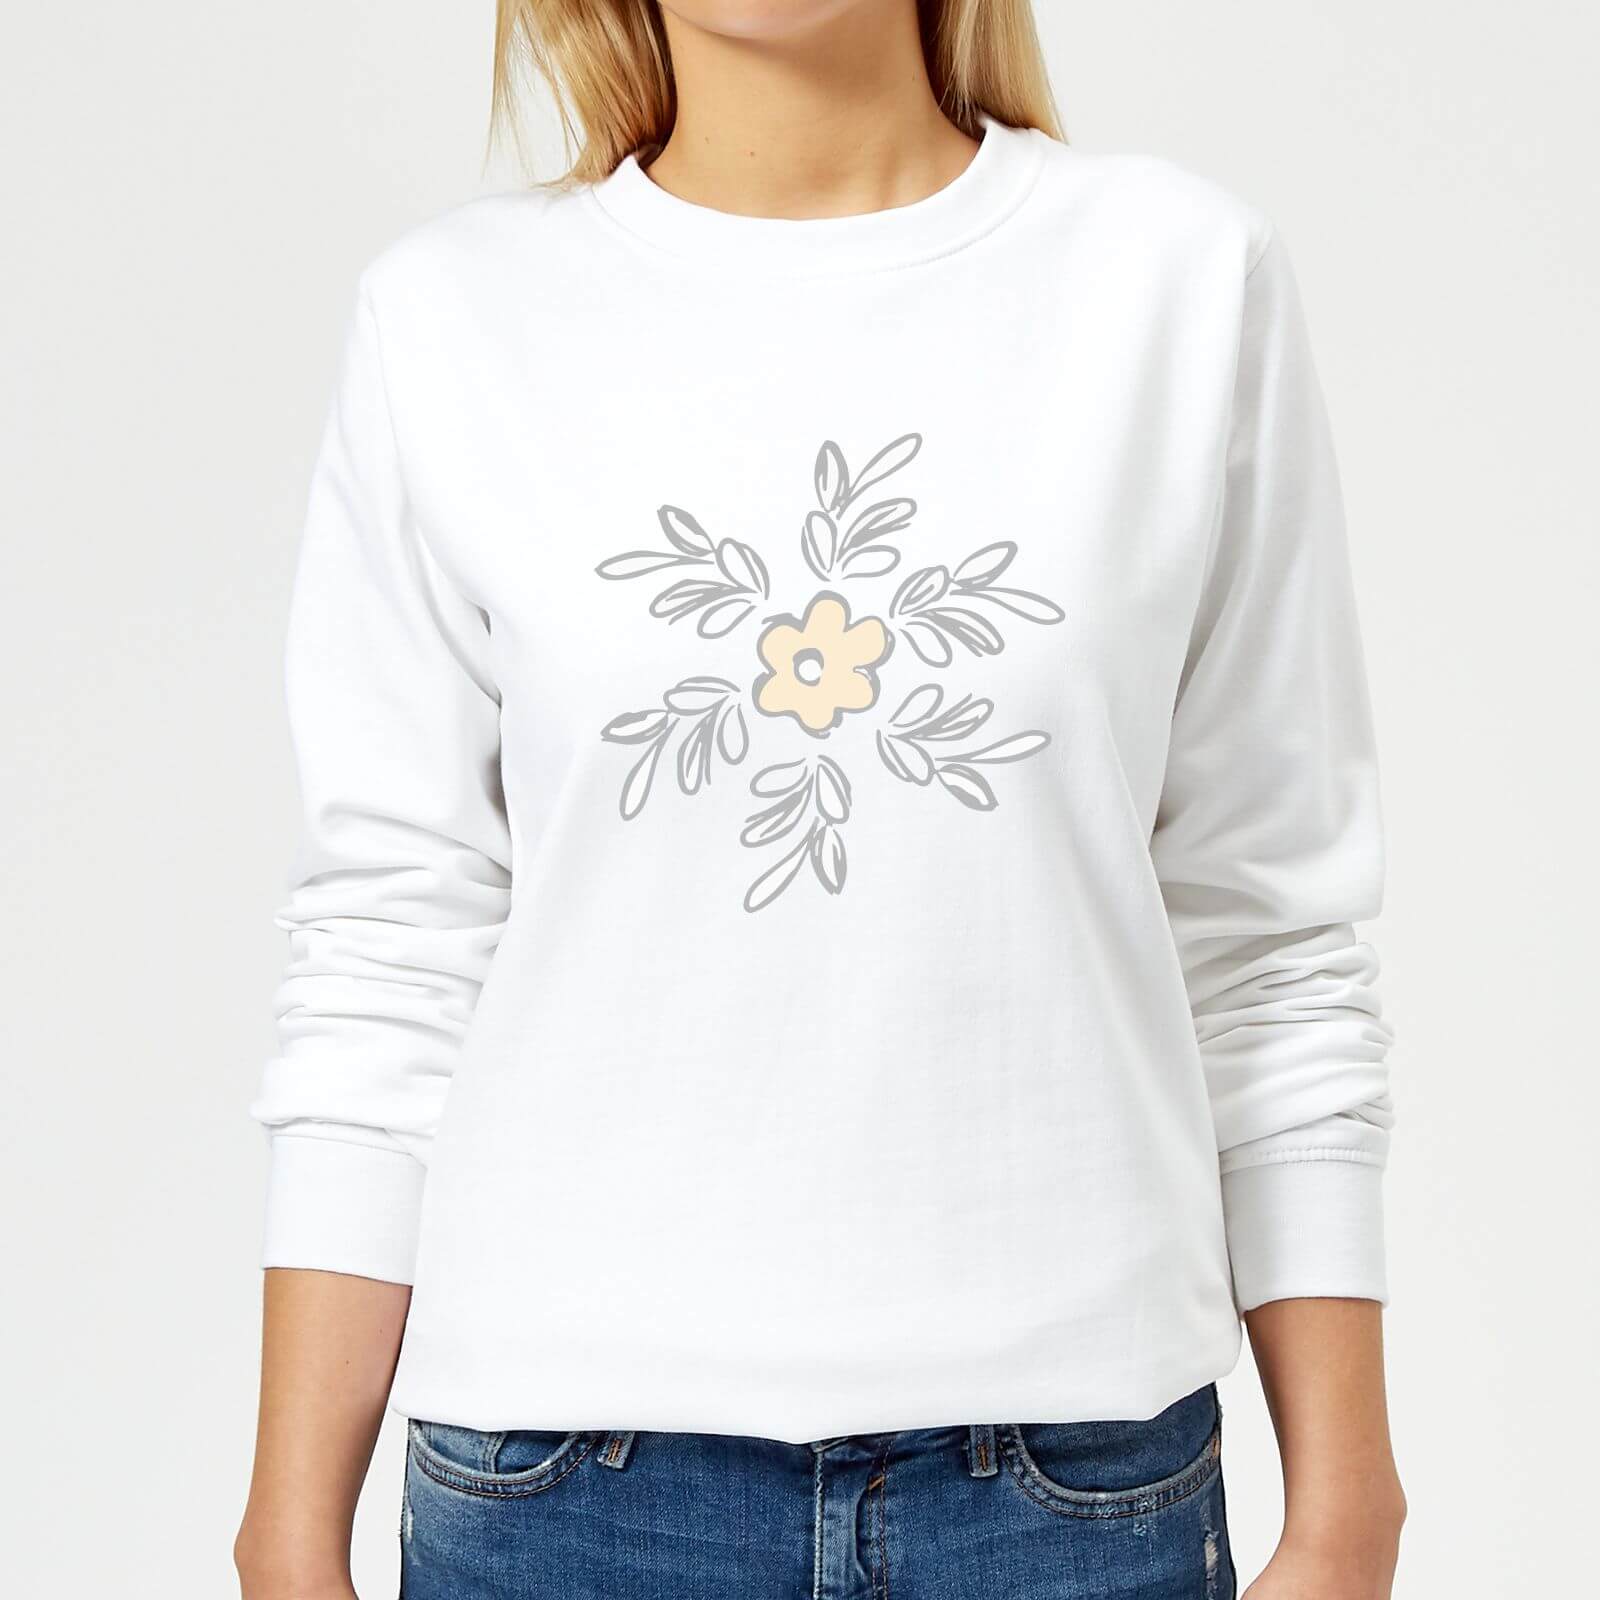 Flower 15 Women's Sweatshirt - White - XS - White